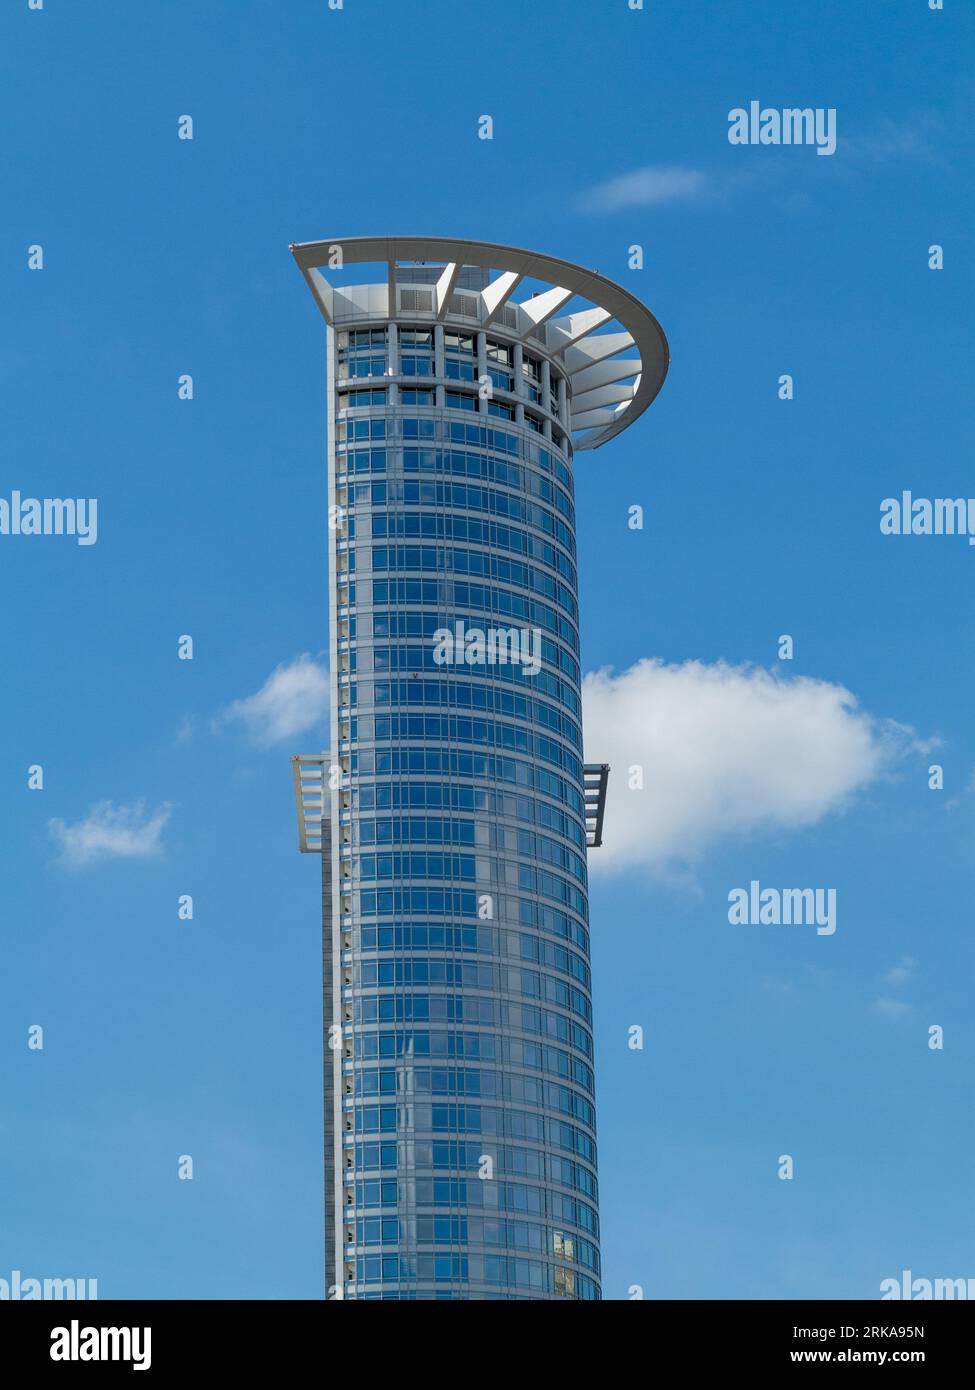 Frankfurt, Deutschland - 17. Mai 2014: Blick auf den Wolkenkratzer Westend 1 in Frankfurt mit ikonischer Krone an der Spitze. Stockfoto